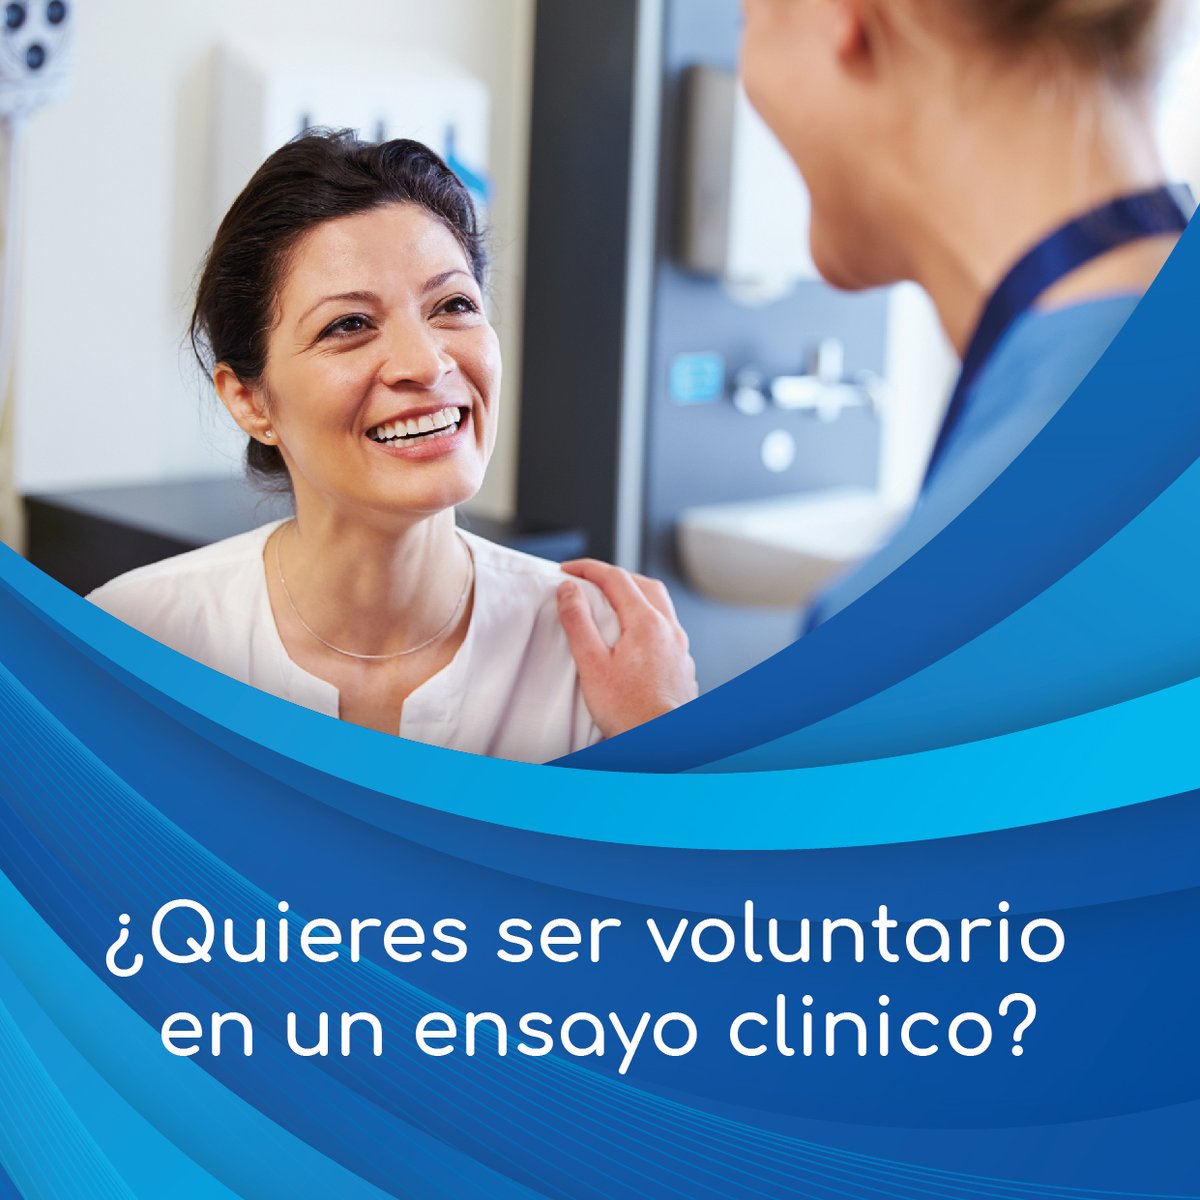 📢Quieres ser voluntario en un ensayo clinico? 🟢Si estás interesado, completa tus datos en el siguiente registro: clinpharmacolgroup.es/registro/